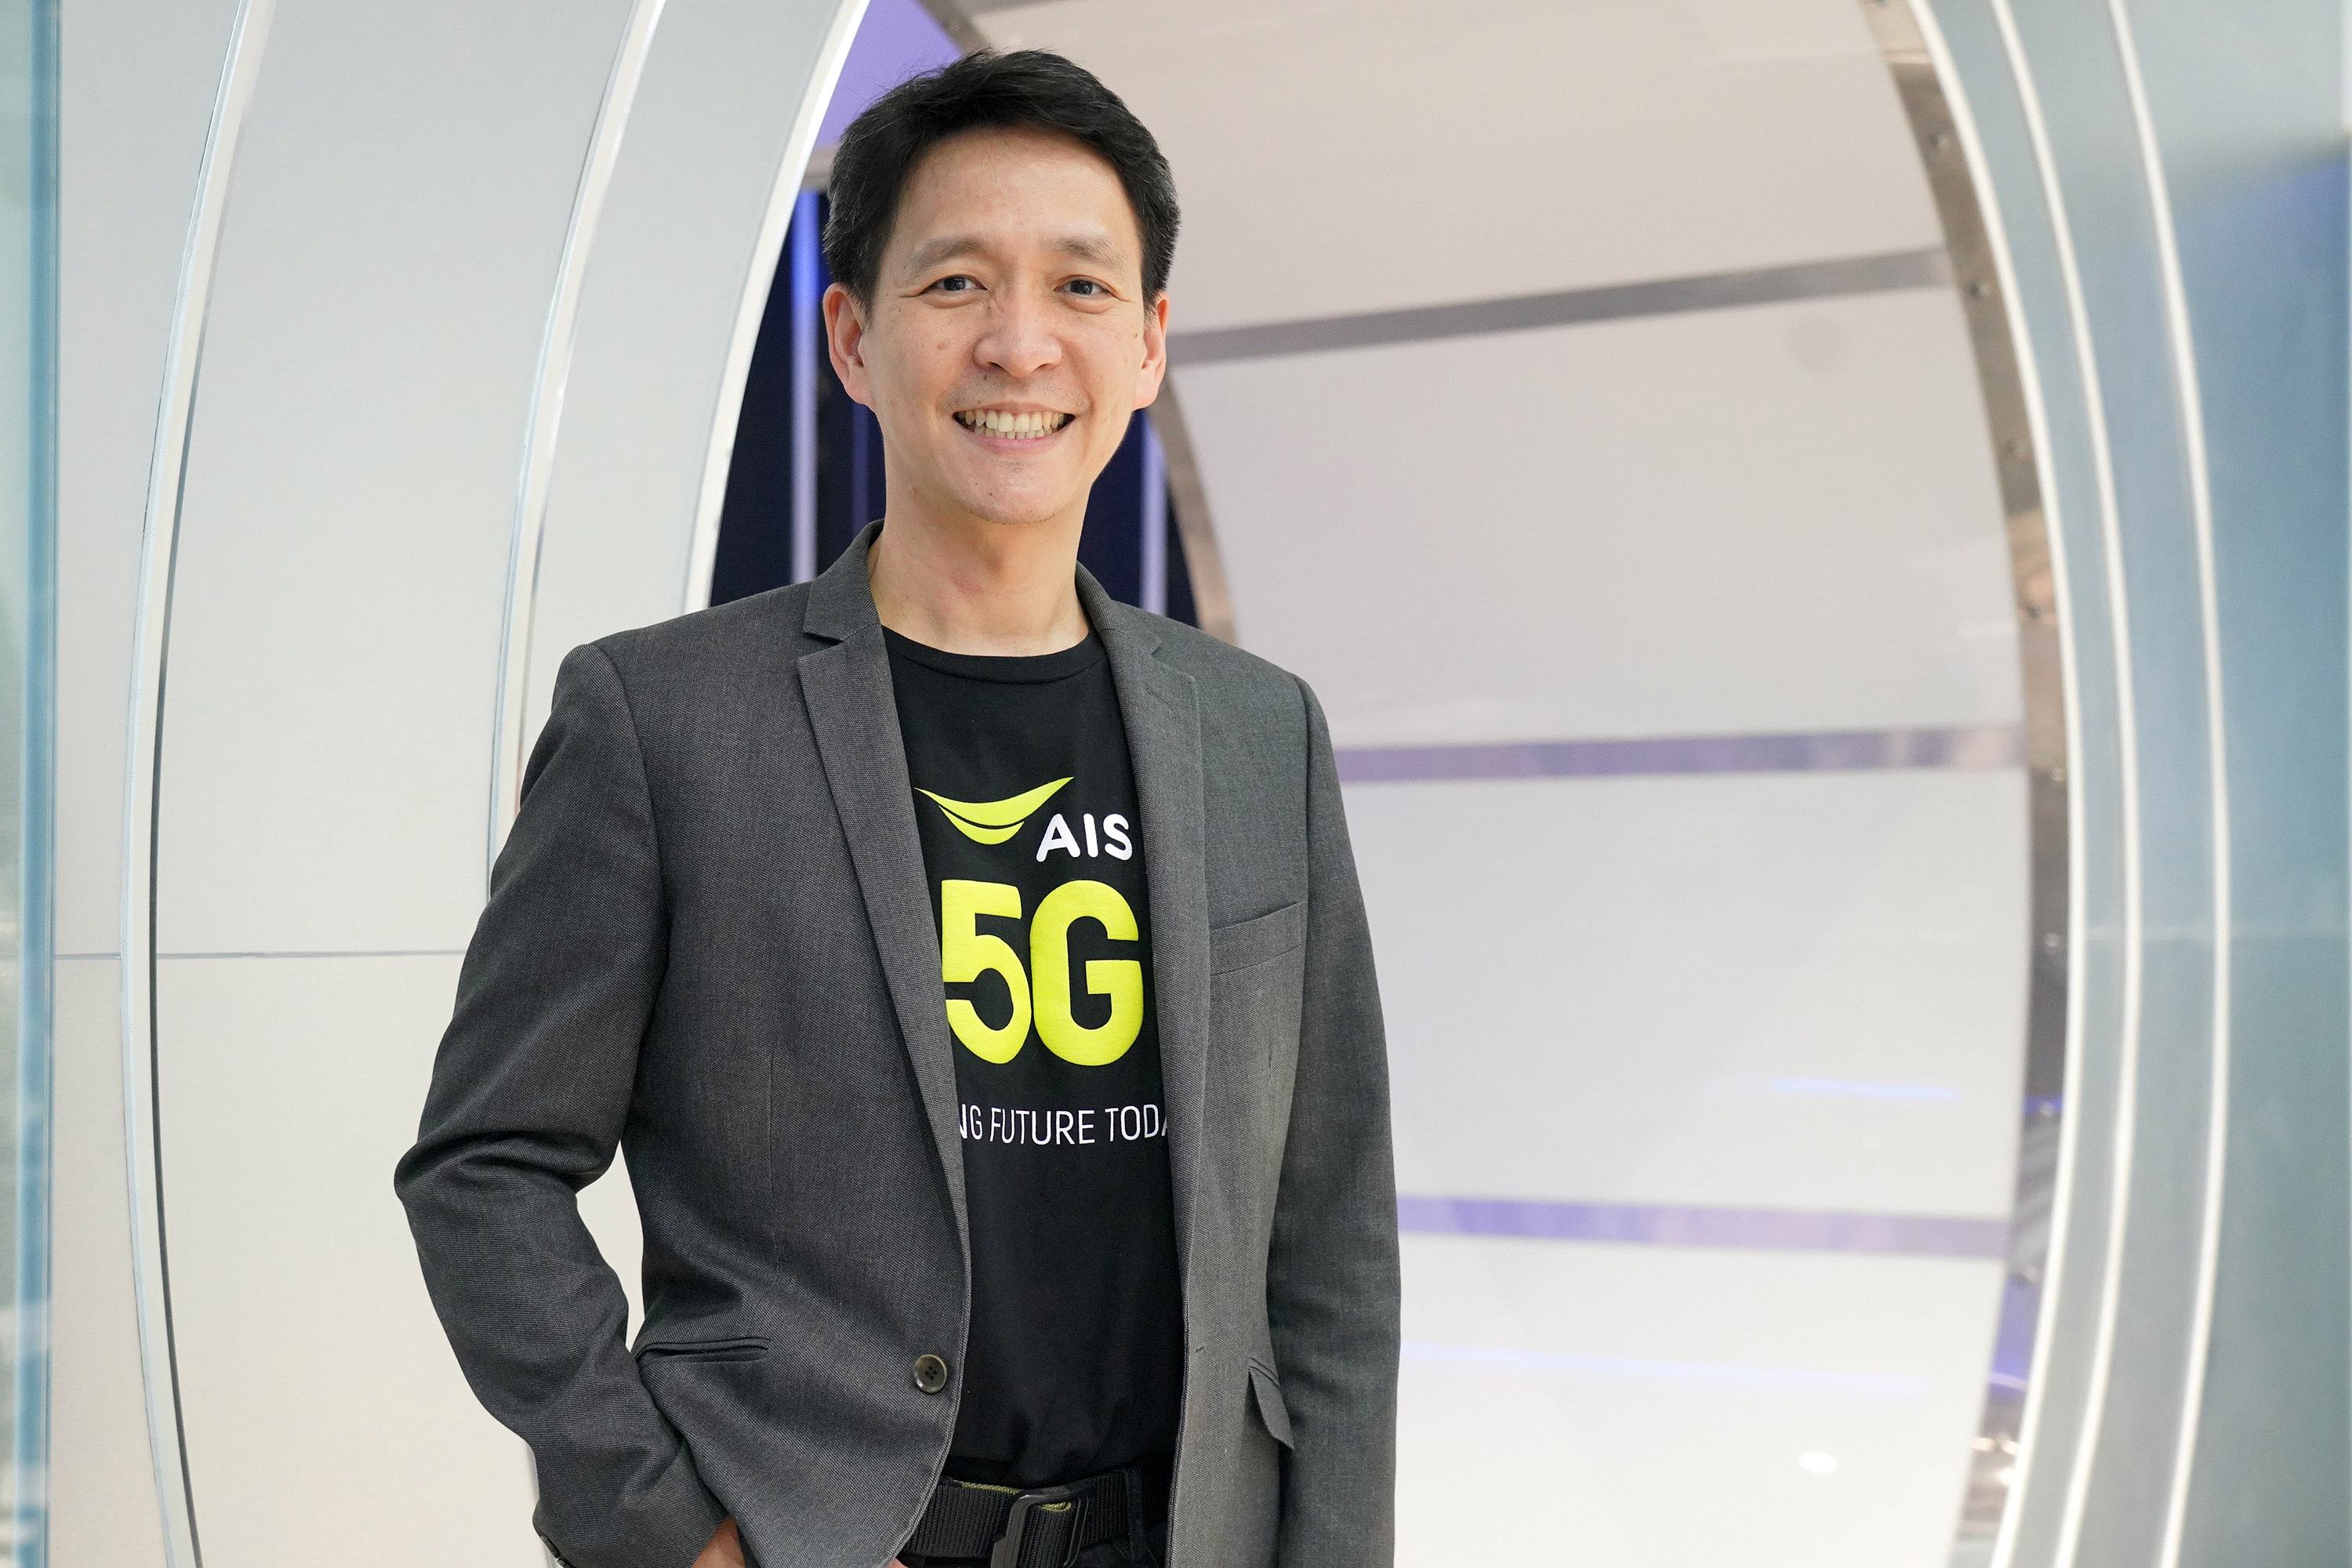 AIS 5G ตอกย้ำผู้นำอีกครั้ง หลังจากเปิดตัว SA เป็นรายแรกในโลก กับ Samsung Galaxy S21 Series 5G  บนเครือข่าย AIS 5G SA